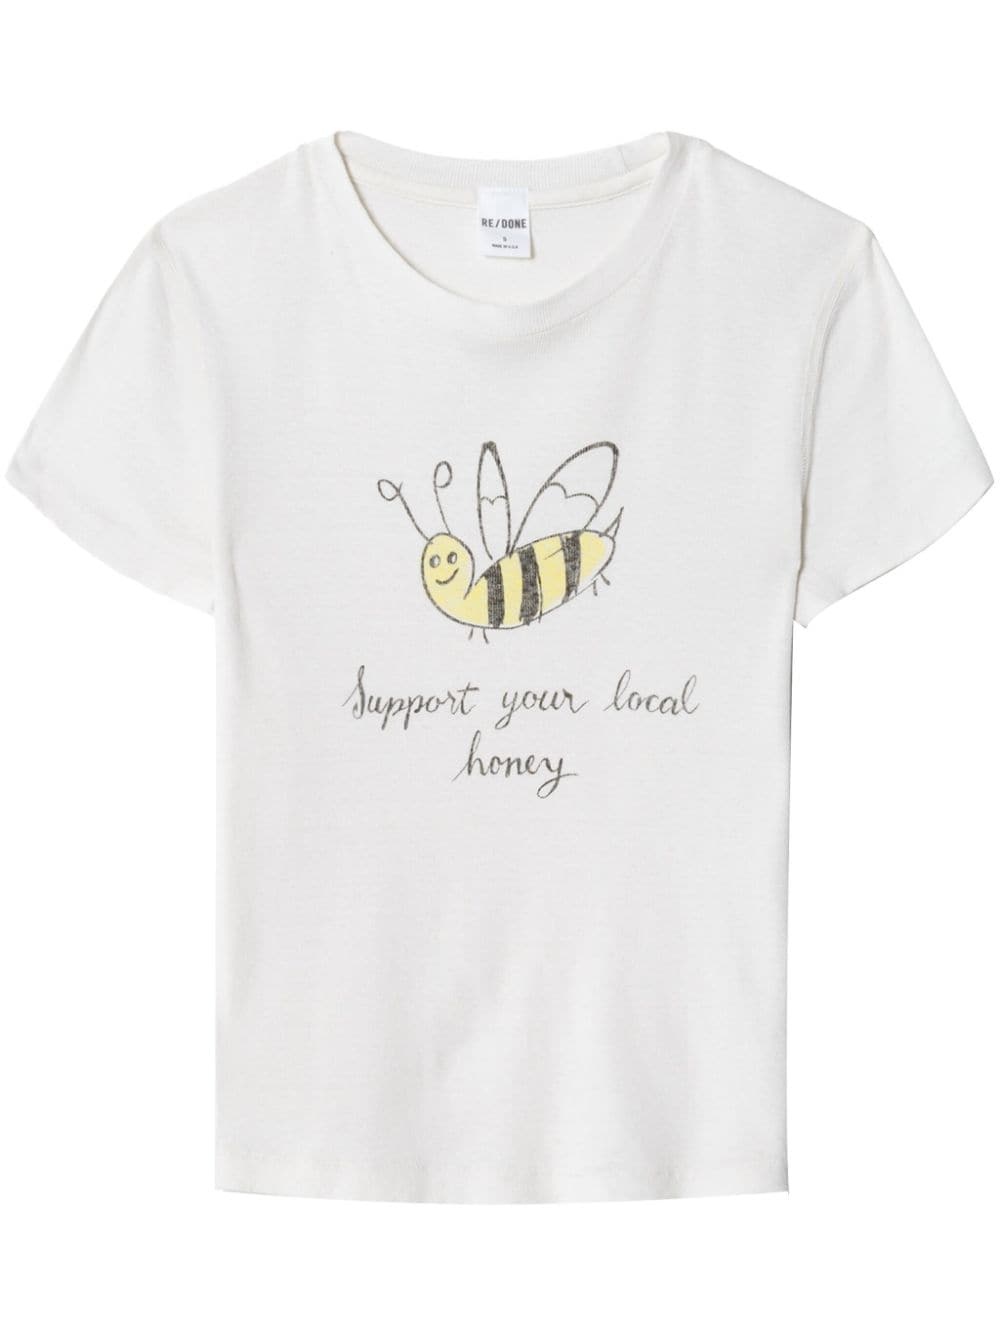 90s Baby Local Honey-print T-shirt - 1